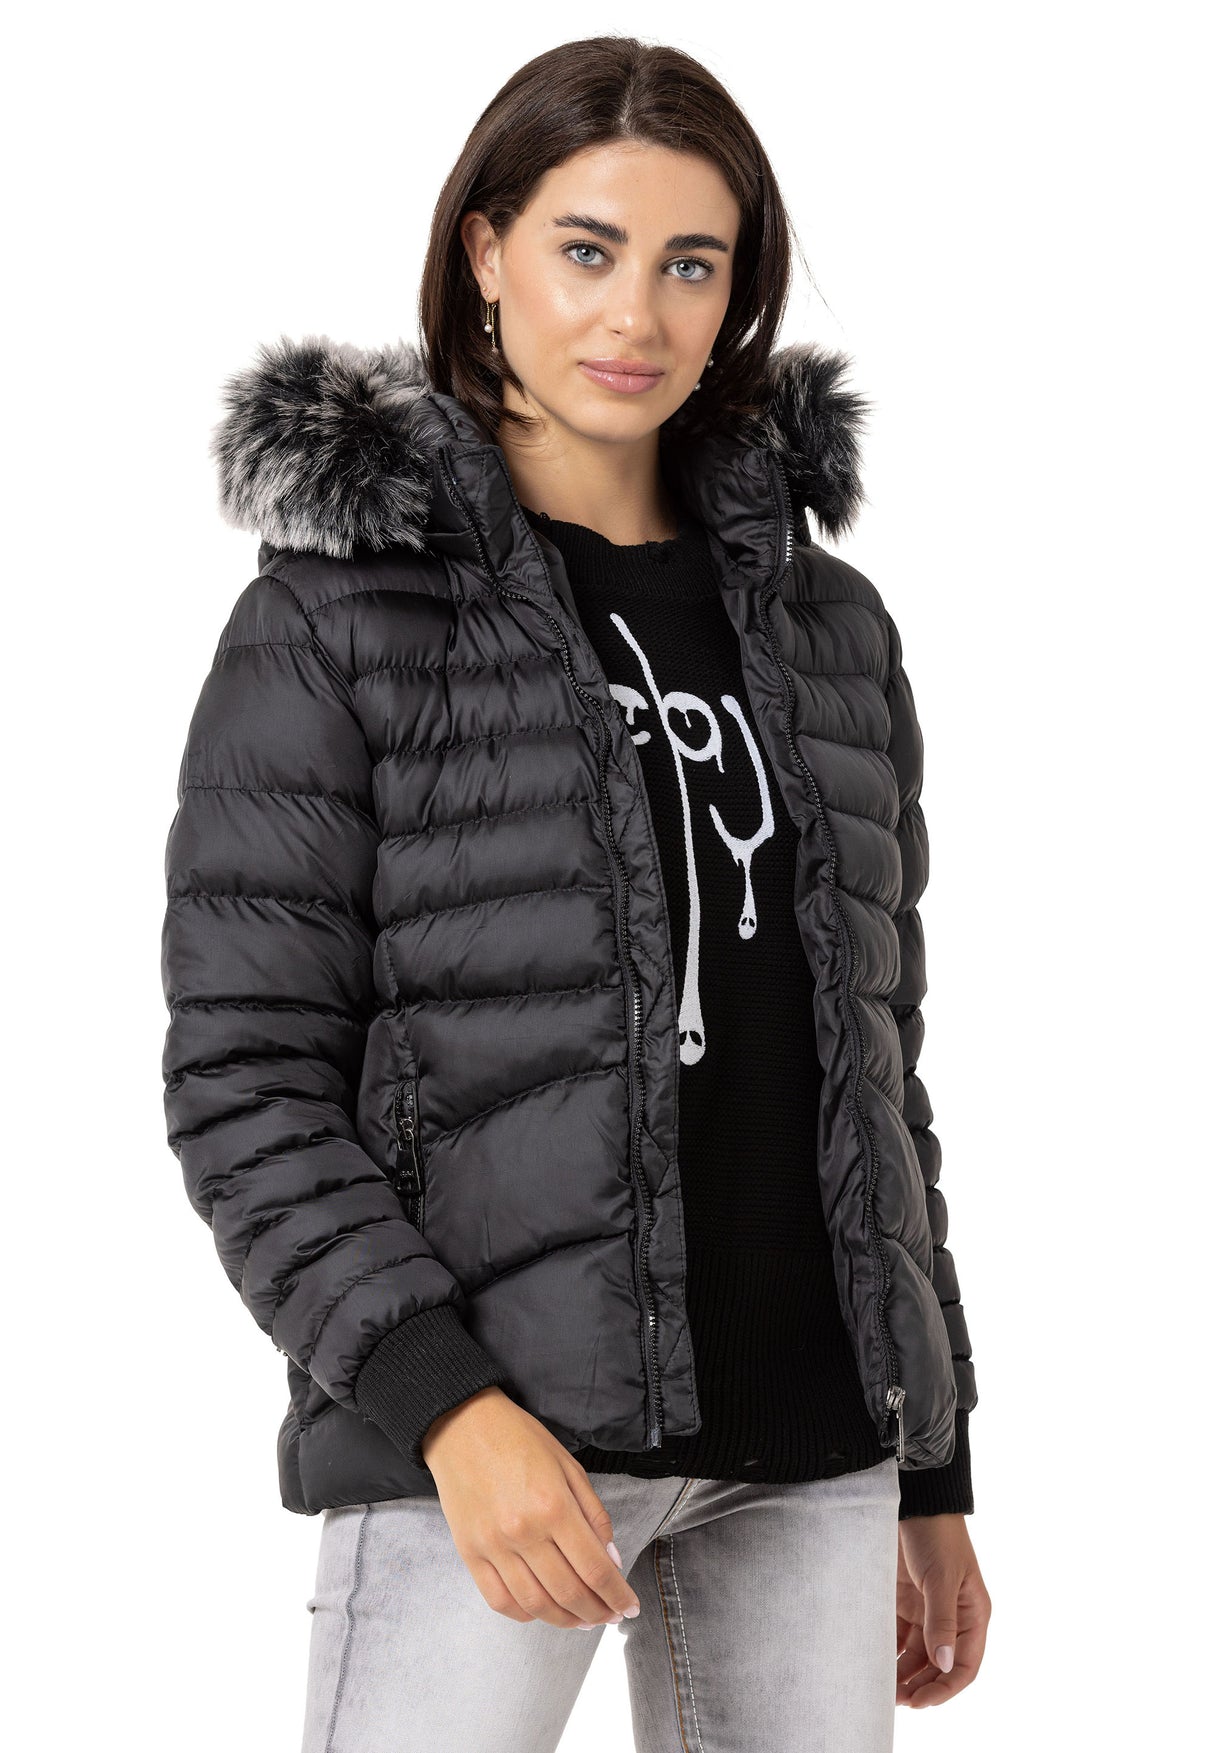 WM132 Chaqueta de invierno para mujeres con capucha